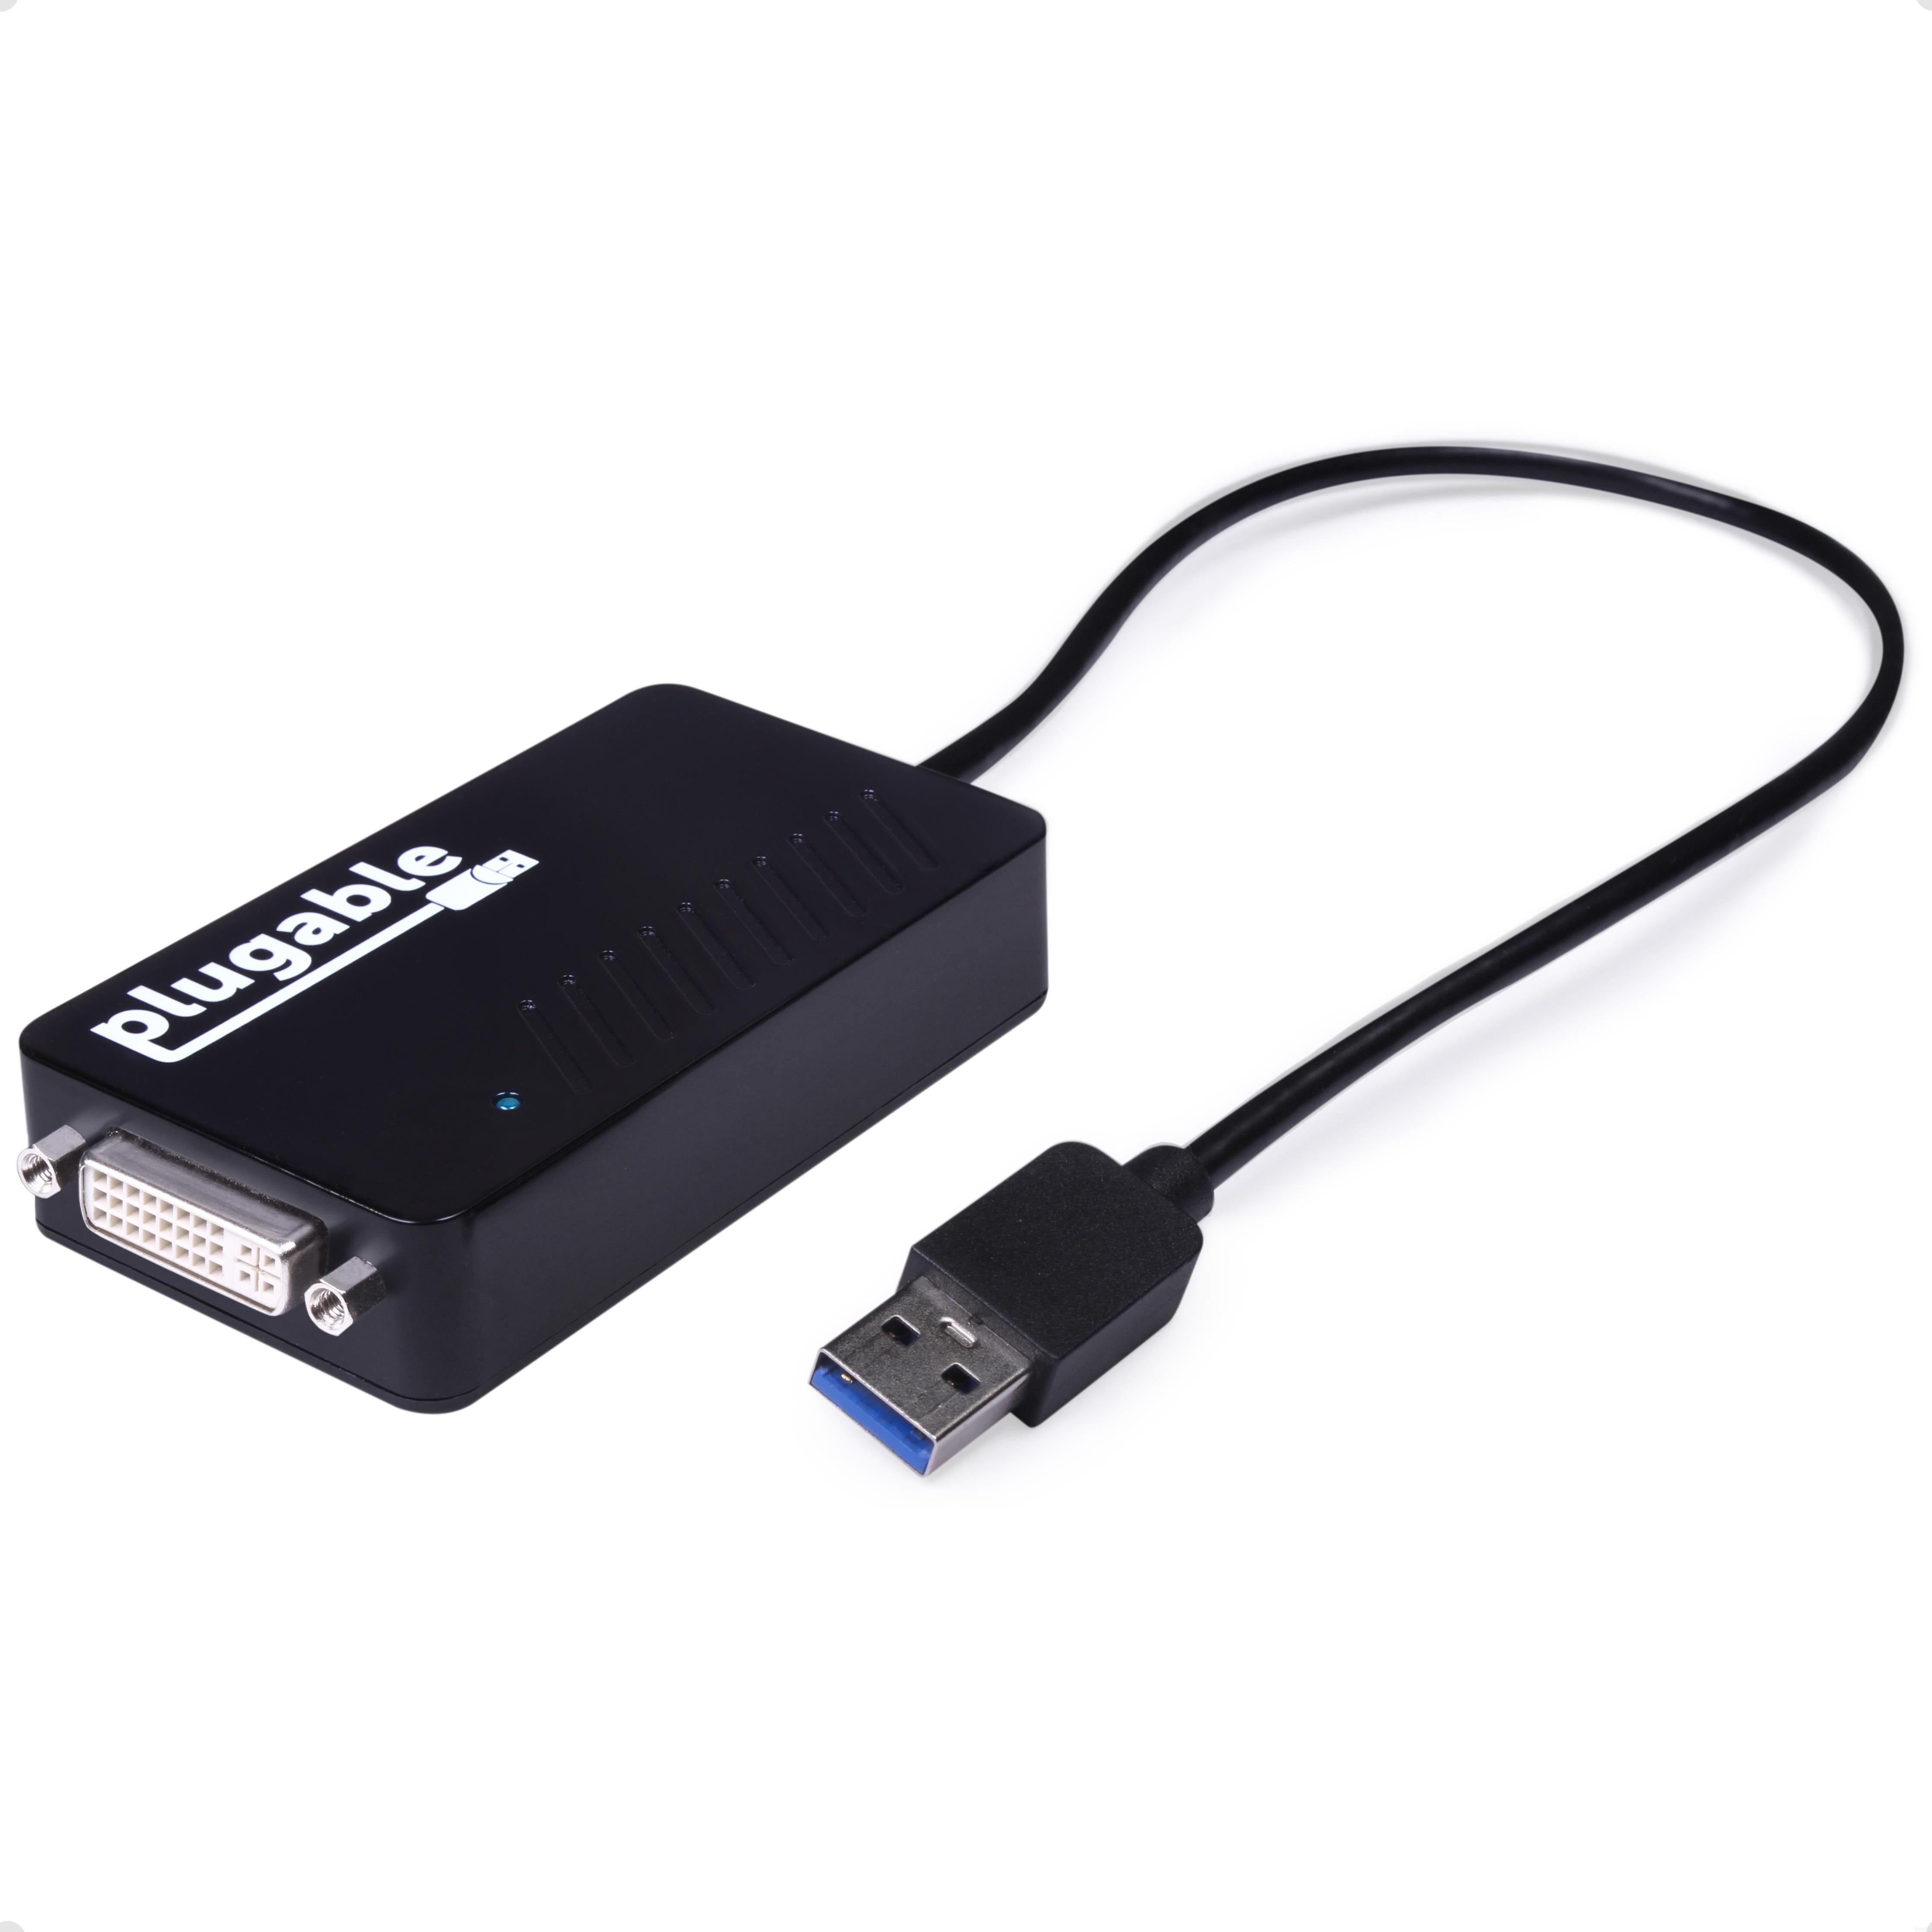 Plugable USB 3.0 HDMI/DVI/VGA Adapter for Multiple Monitors